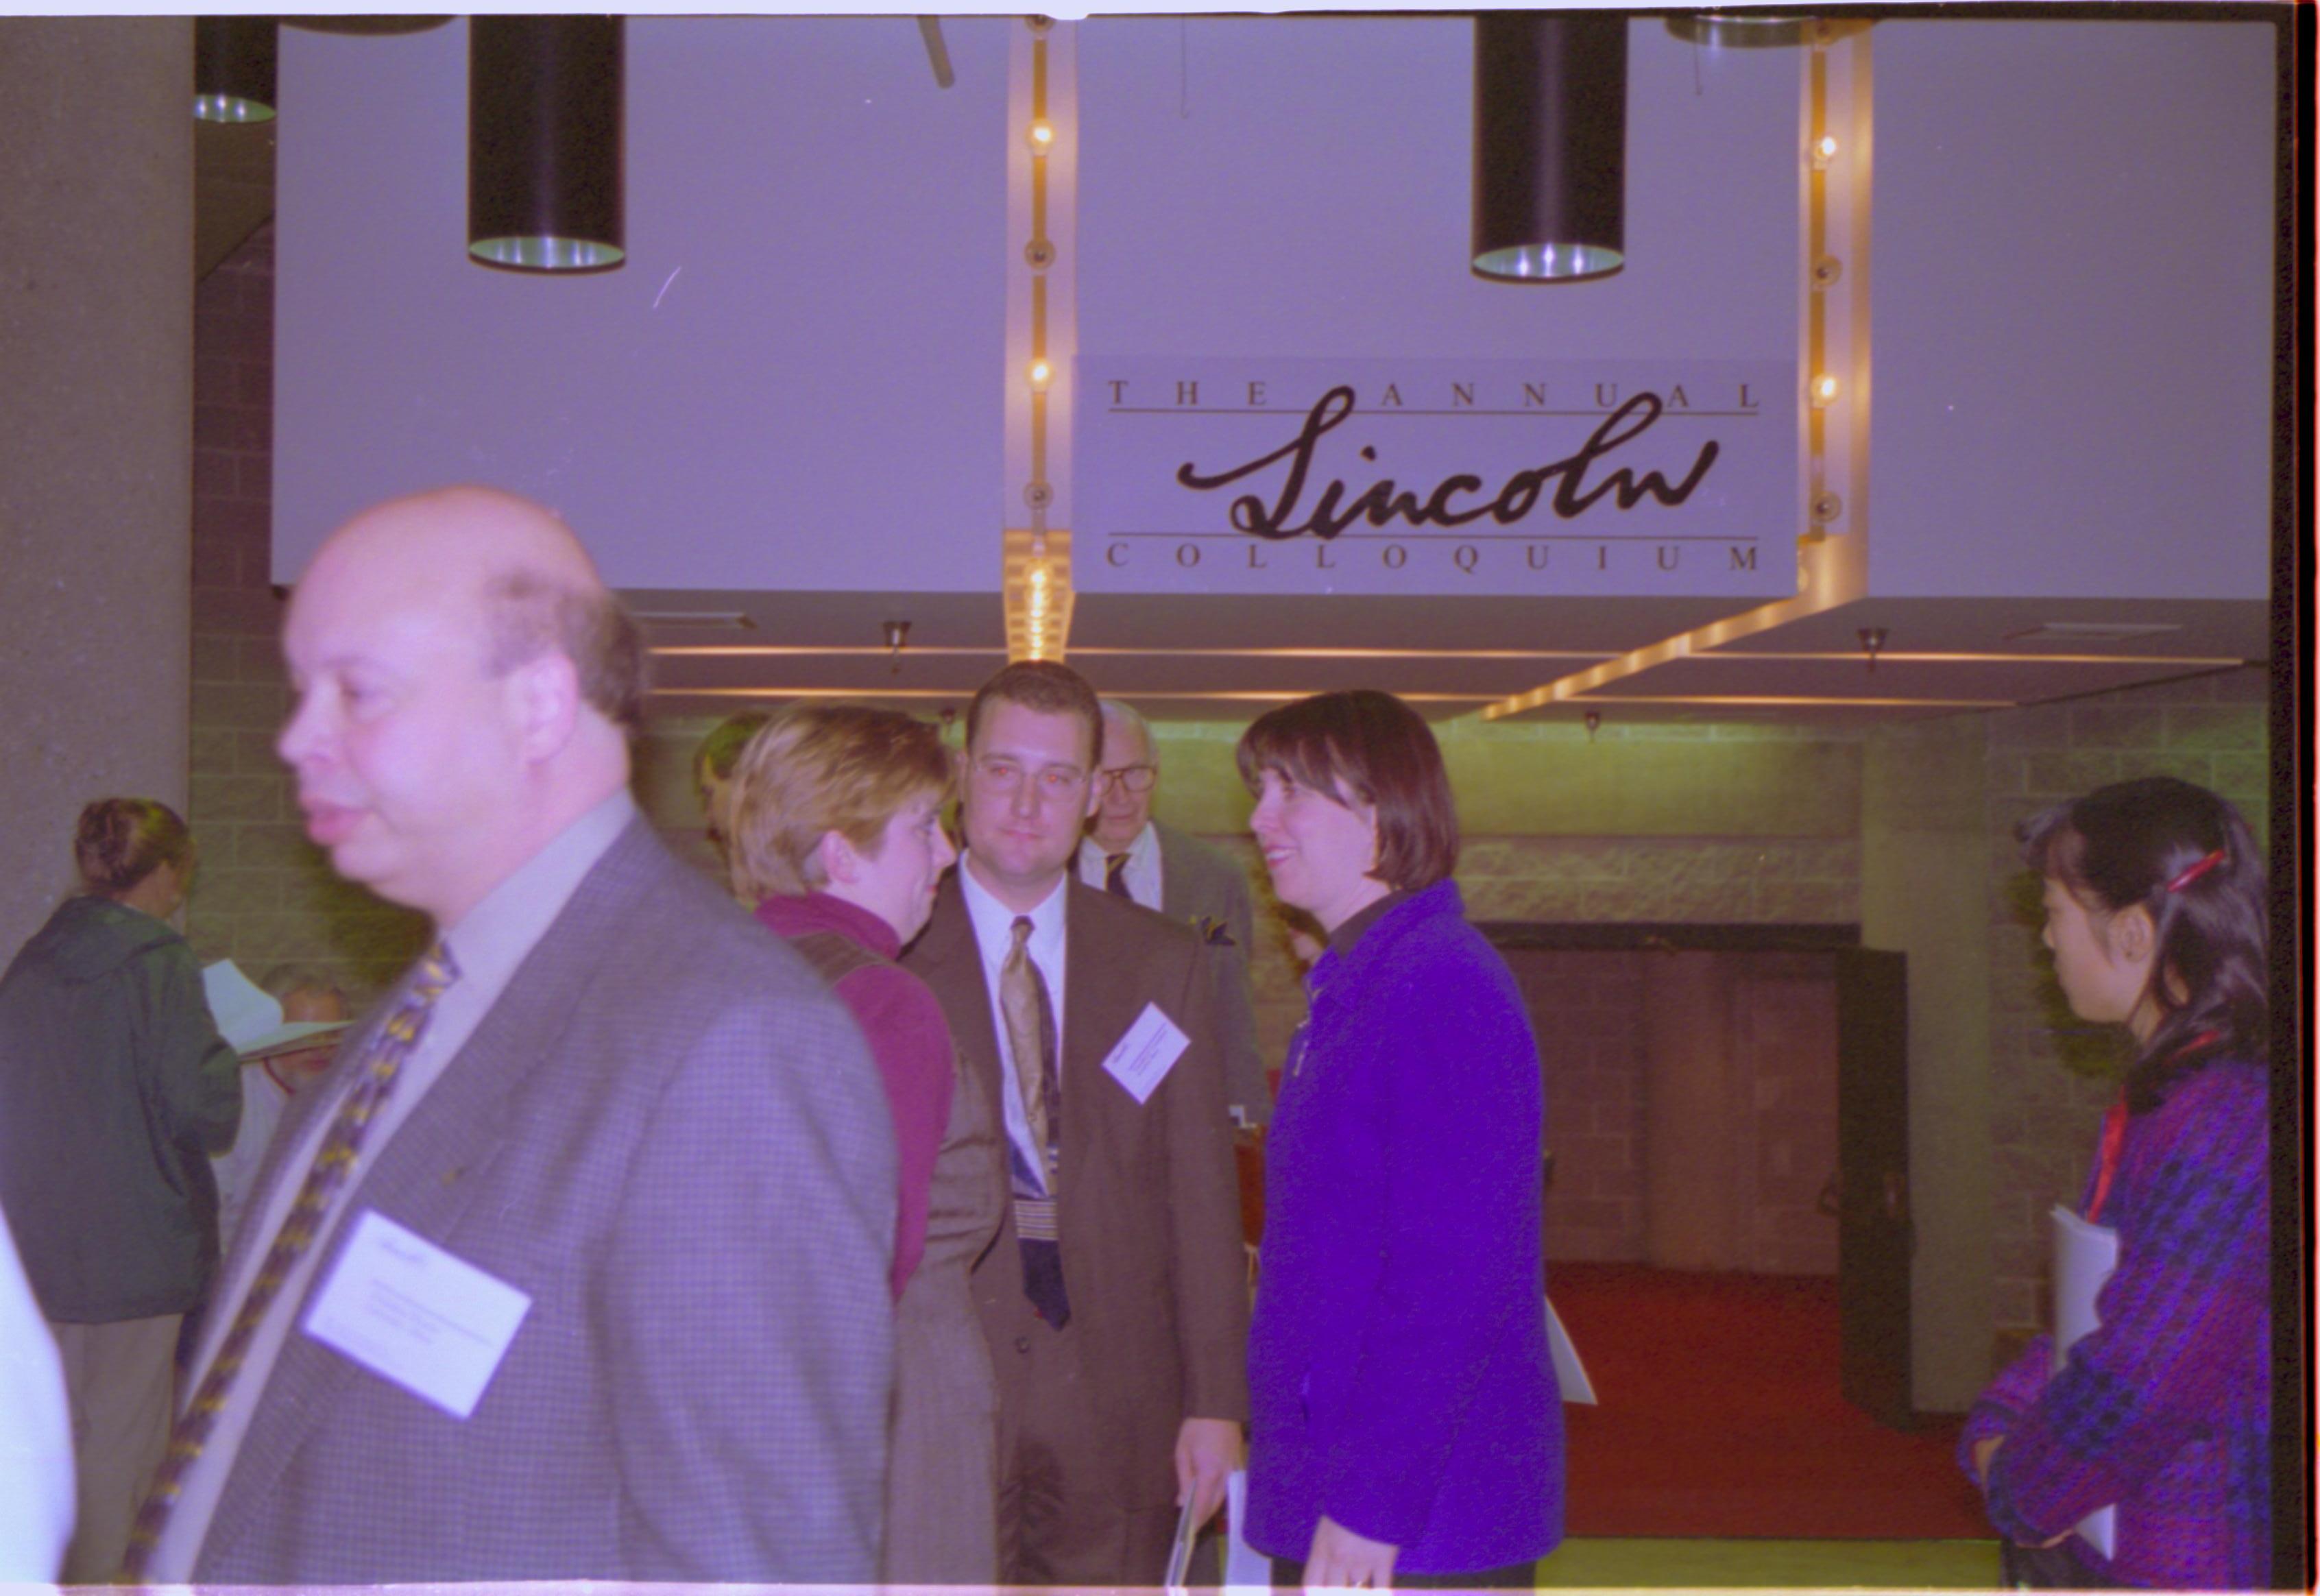 Three people talking under Colloquium sign. 3-1997 Colloq (color); 28 Colloquium, 1997